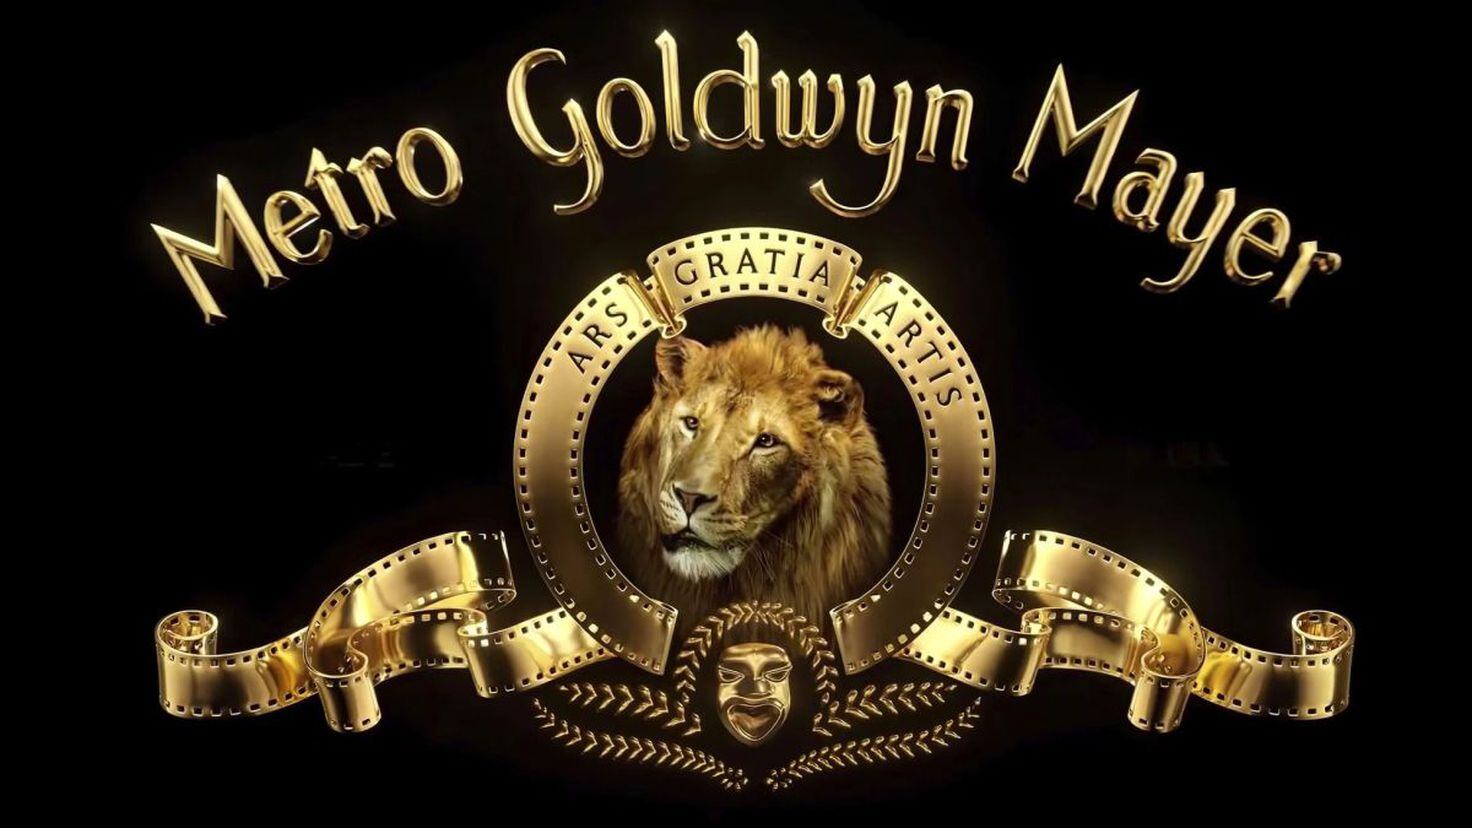 Metro-Goldwyn-Mayer - Todas las noticias - AS.com.